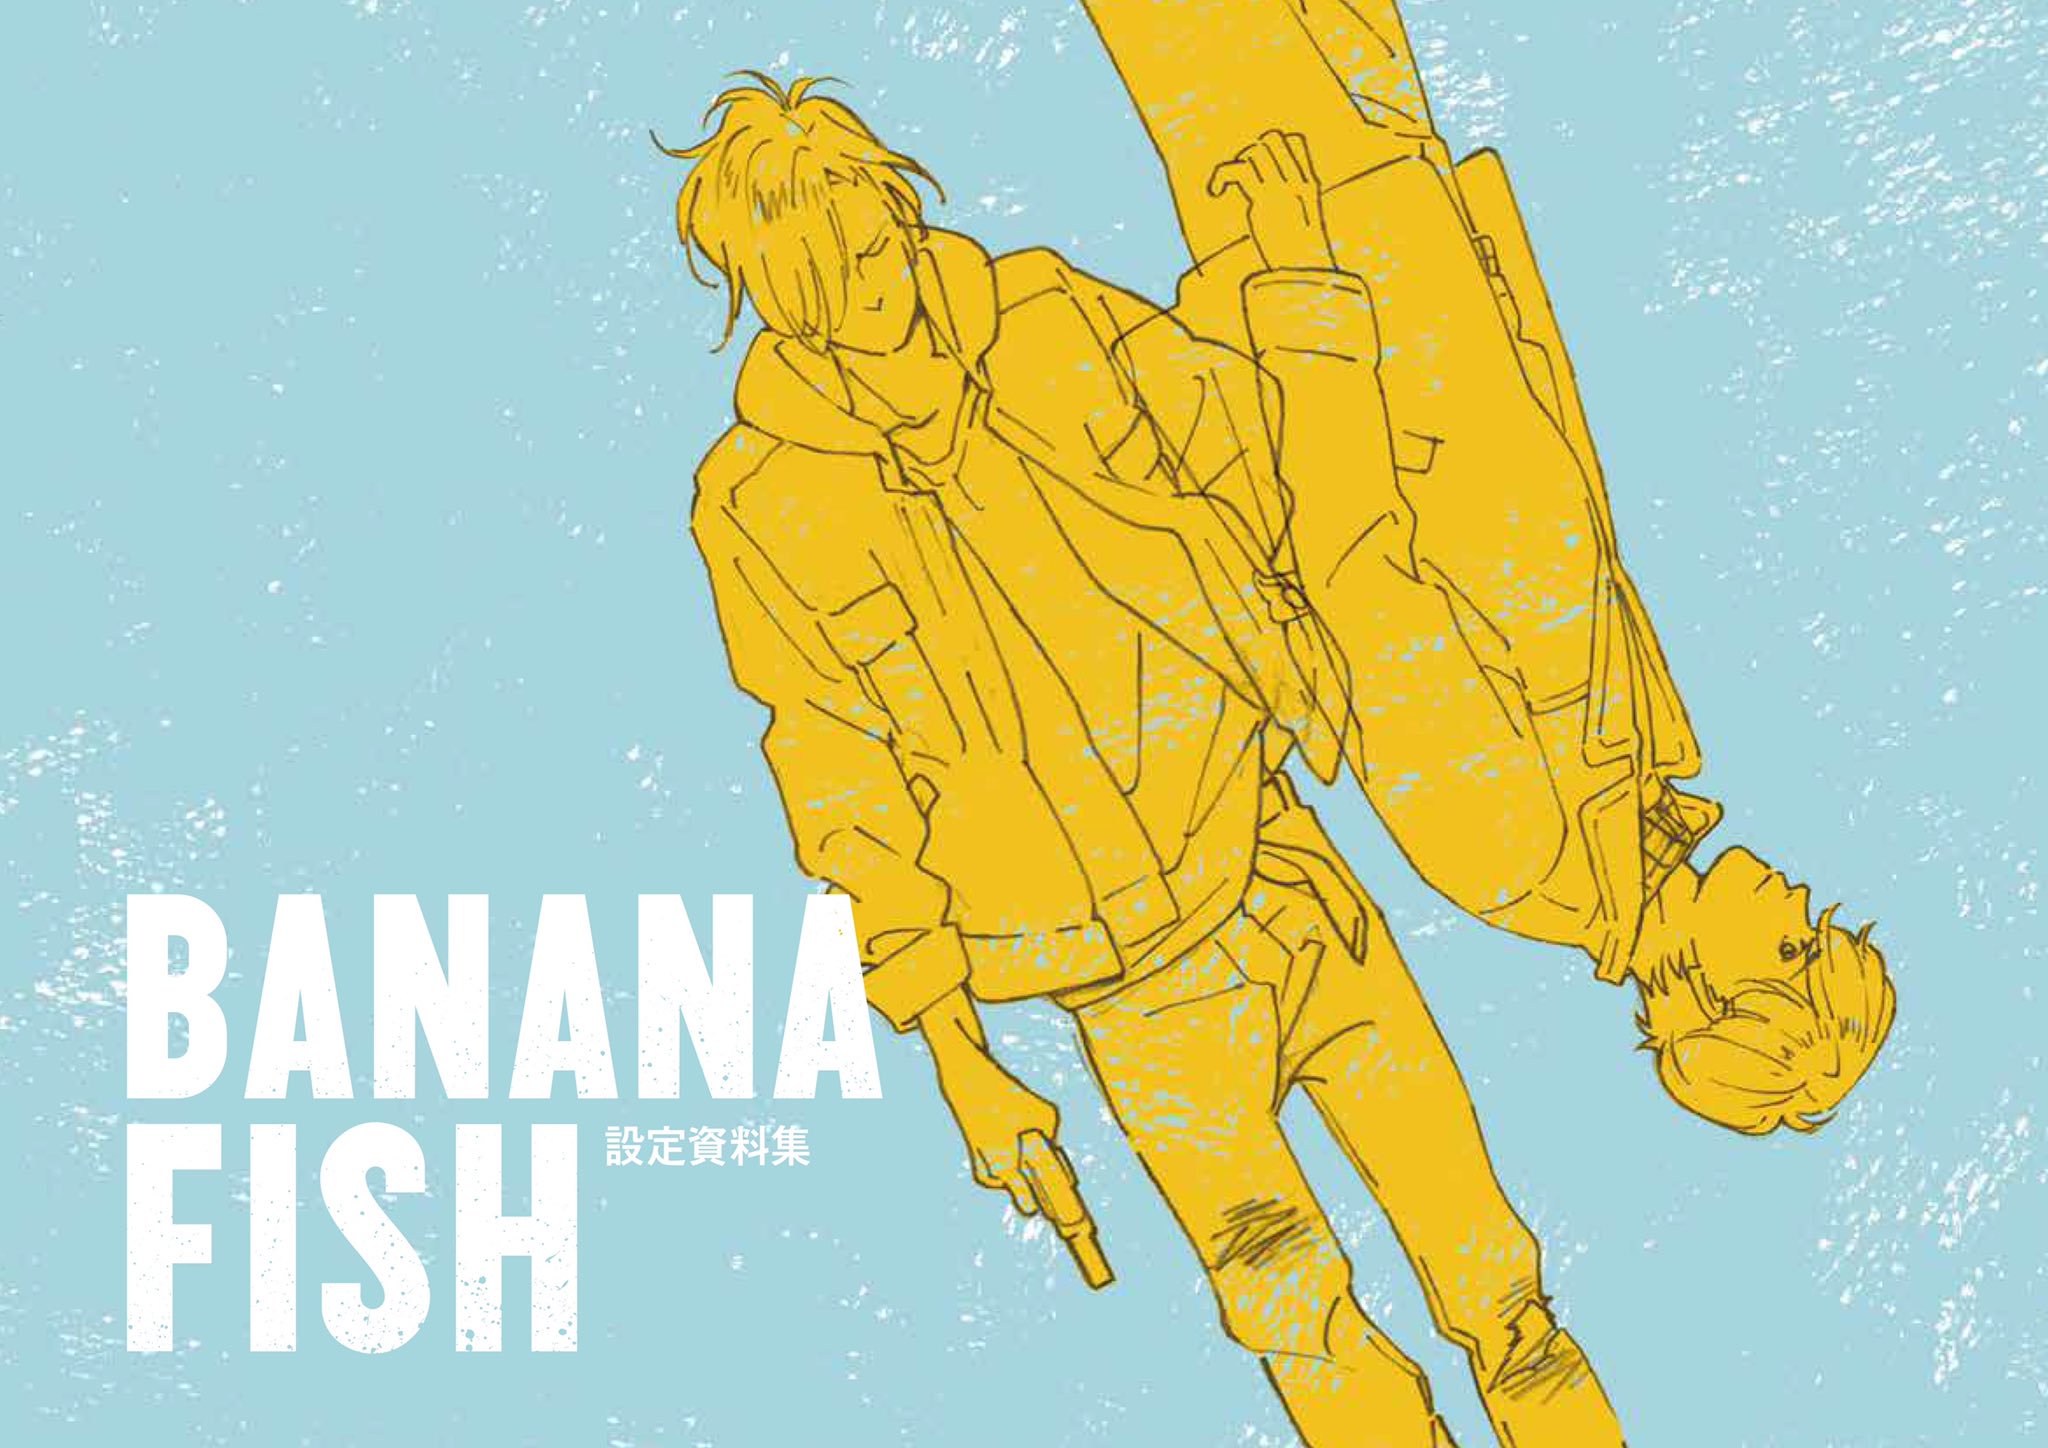 Banana Fish  Anime films, Anime printables, Anime shows